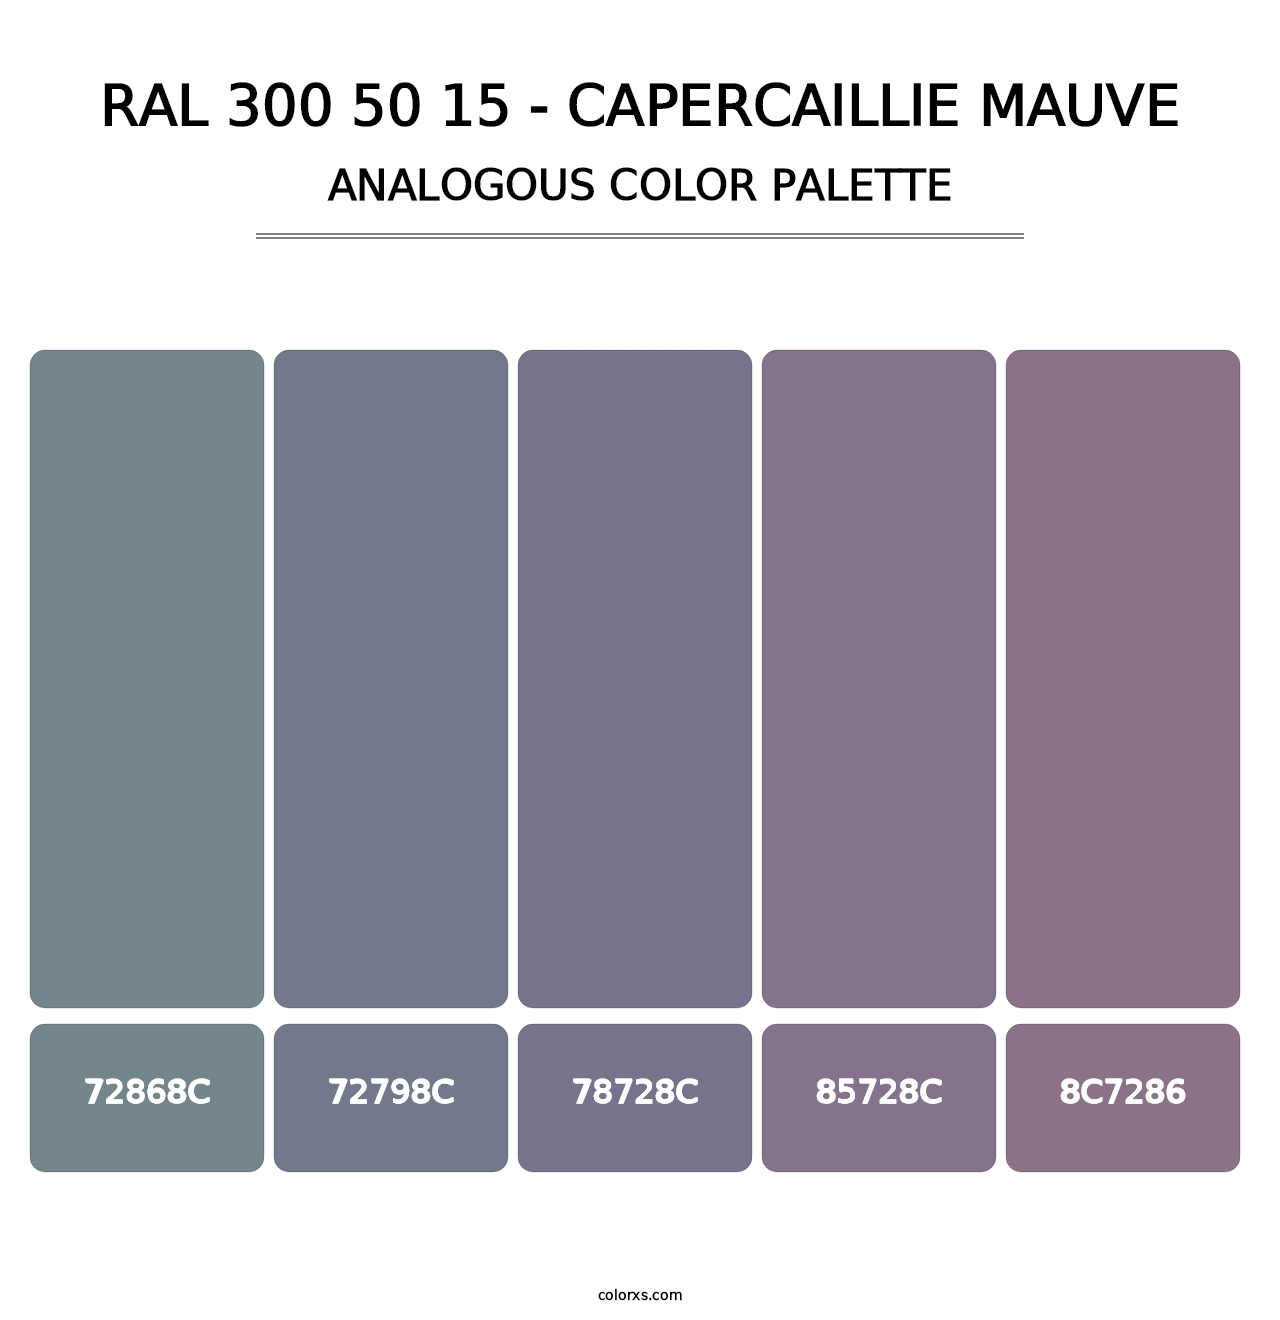 RAL 300 50 15 - Capercaillie Mauve - Analogous Color Palette